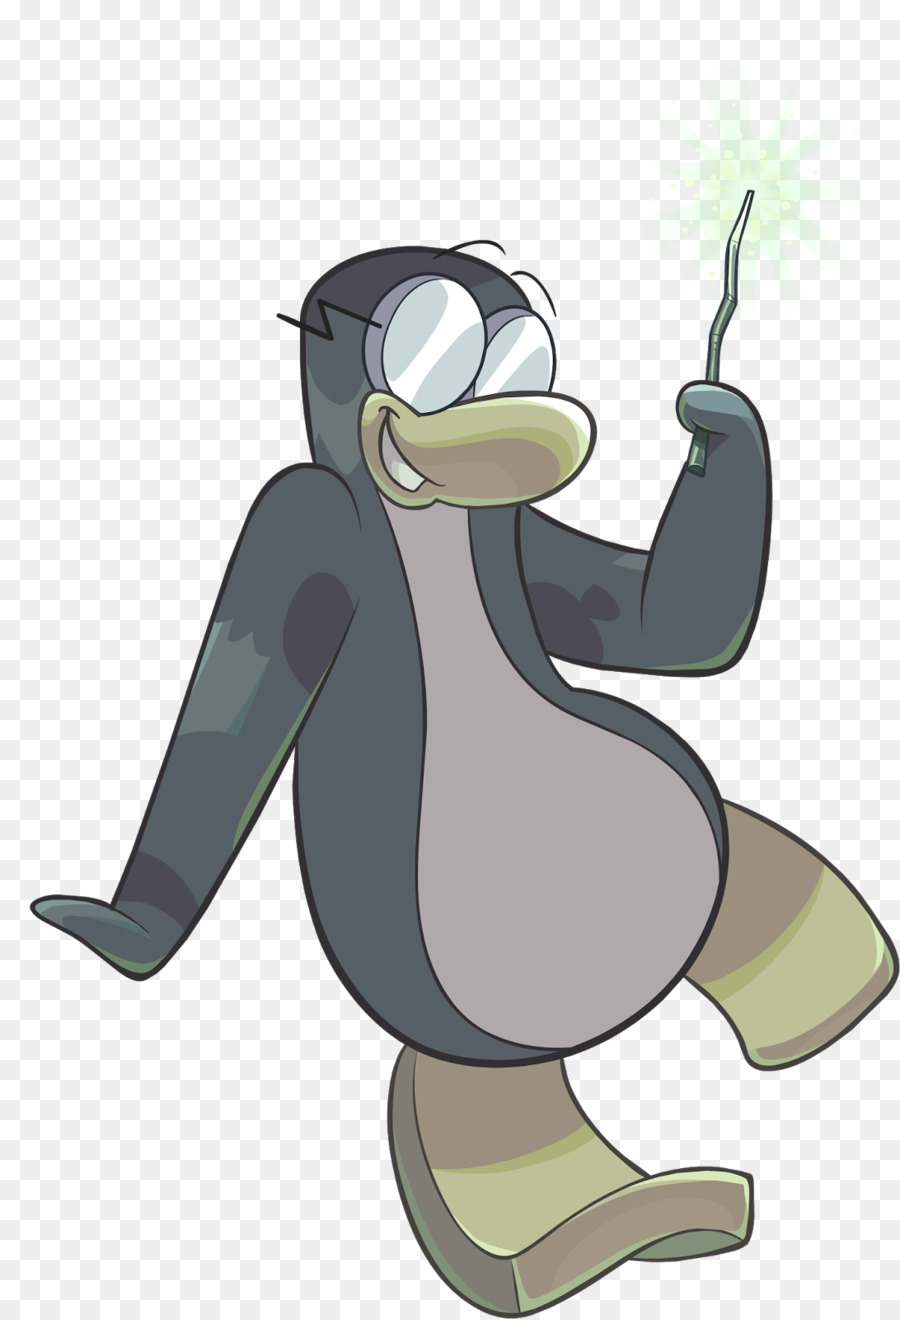 Club Penguin Pirati dei Caraibi Online - Pinguino